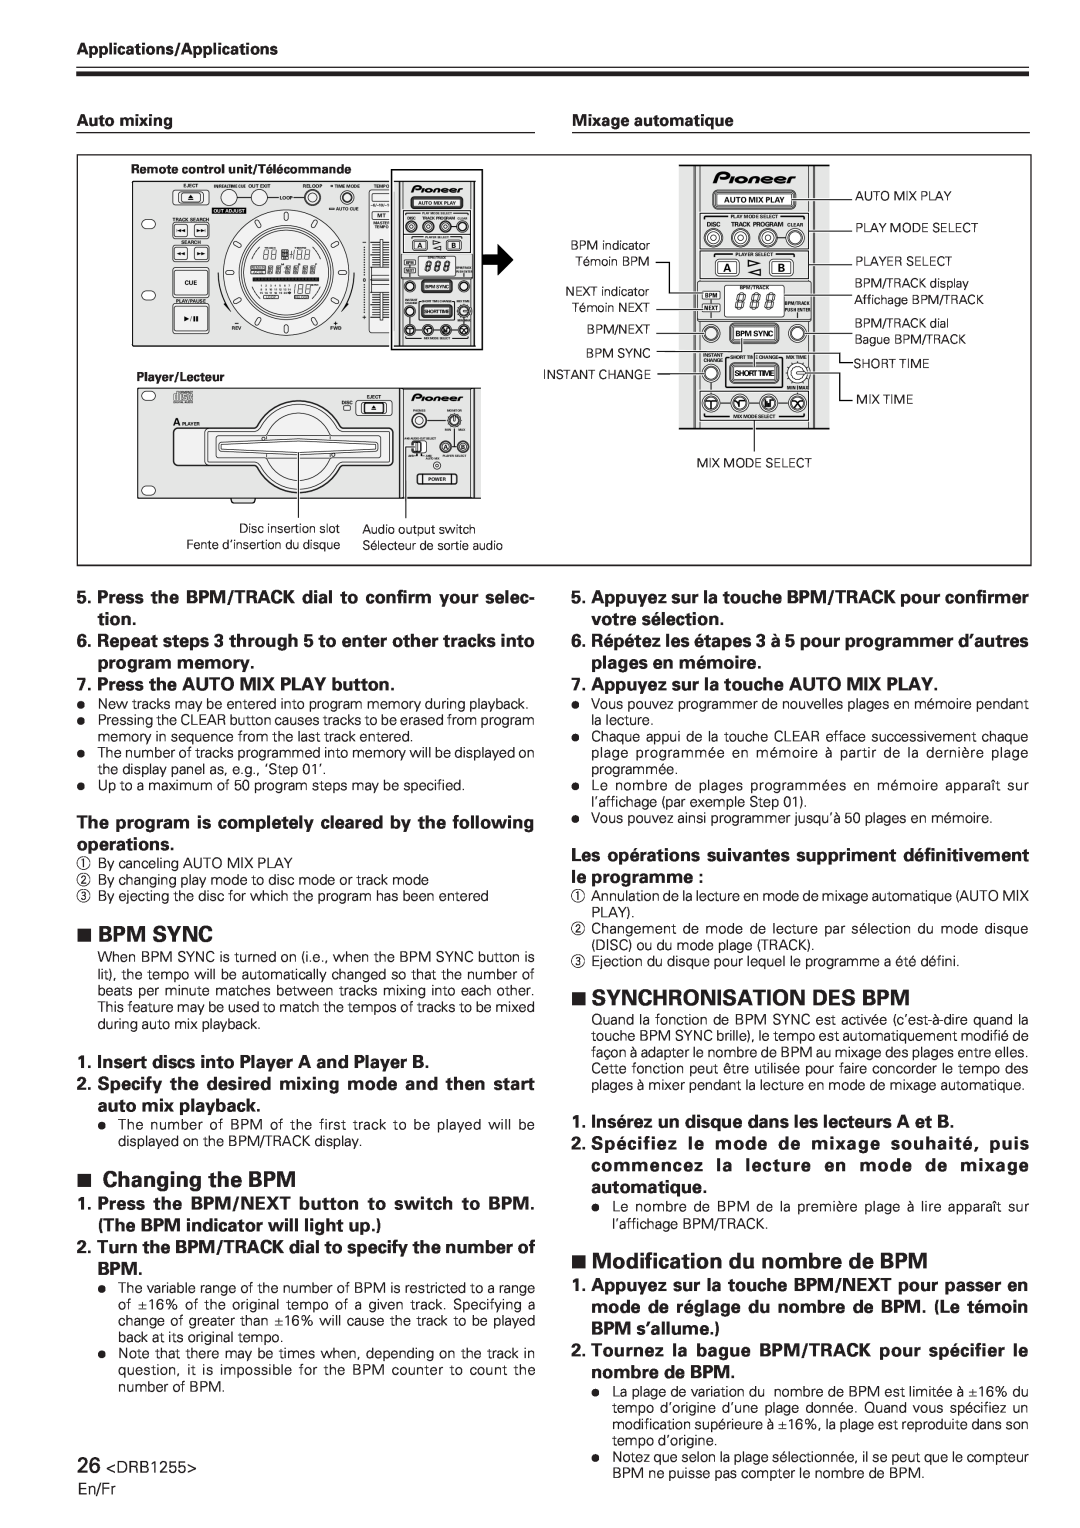 Pioneer CMX-5000 manual 7BPM SYNC, 7Changing the BPM, 7SYNCHRONISATION DES BPM, 7Modification du nombre de BPM 